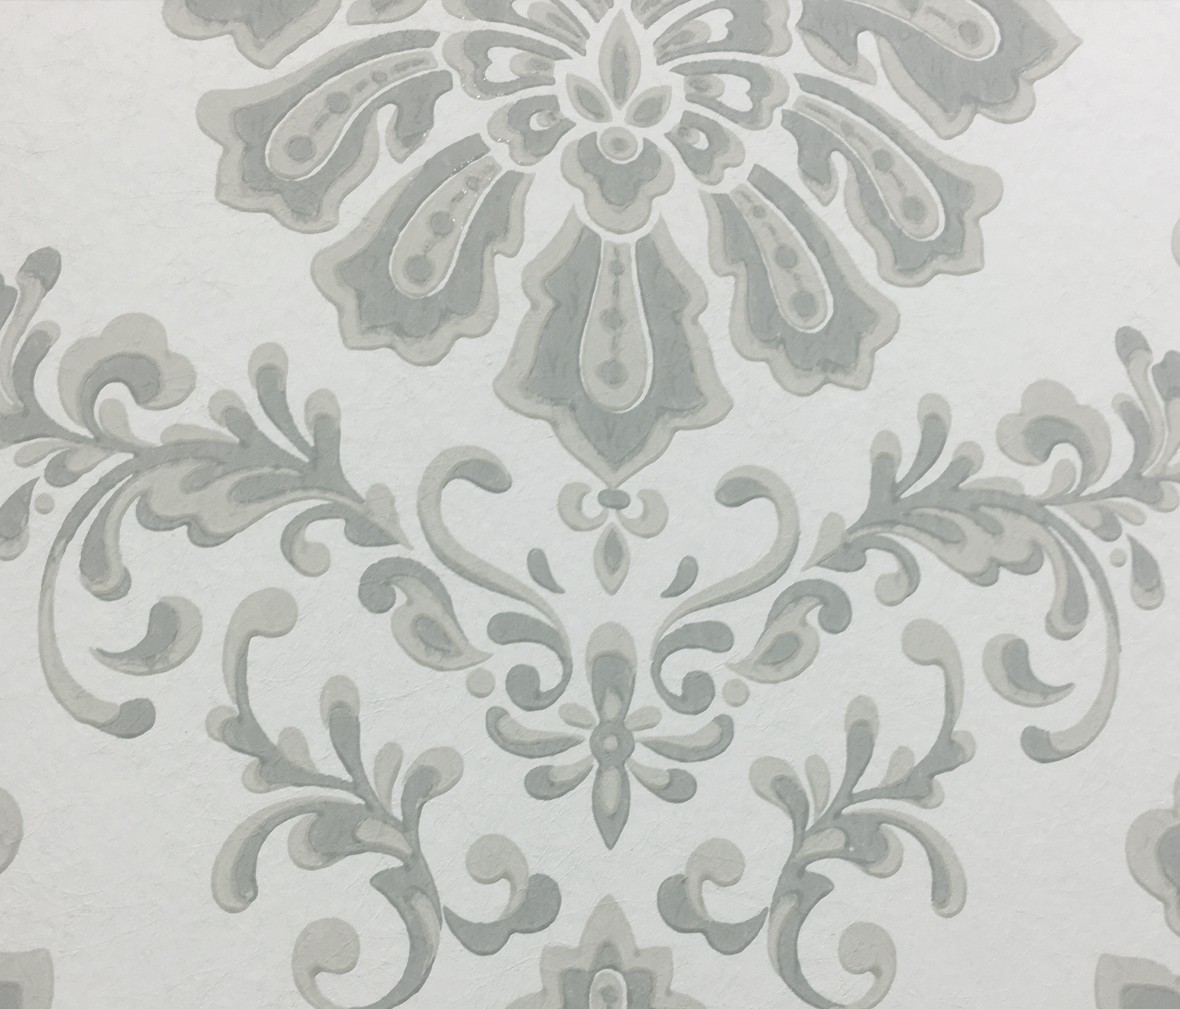 格莱美壁纸 艾文顿系列 1602-104-04型号进口环保无纺布墙纸 细节展示